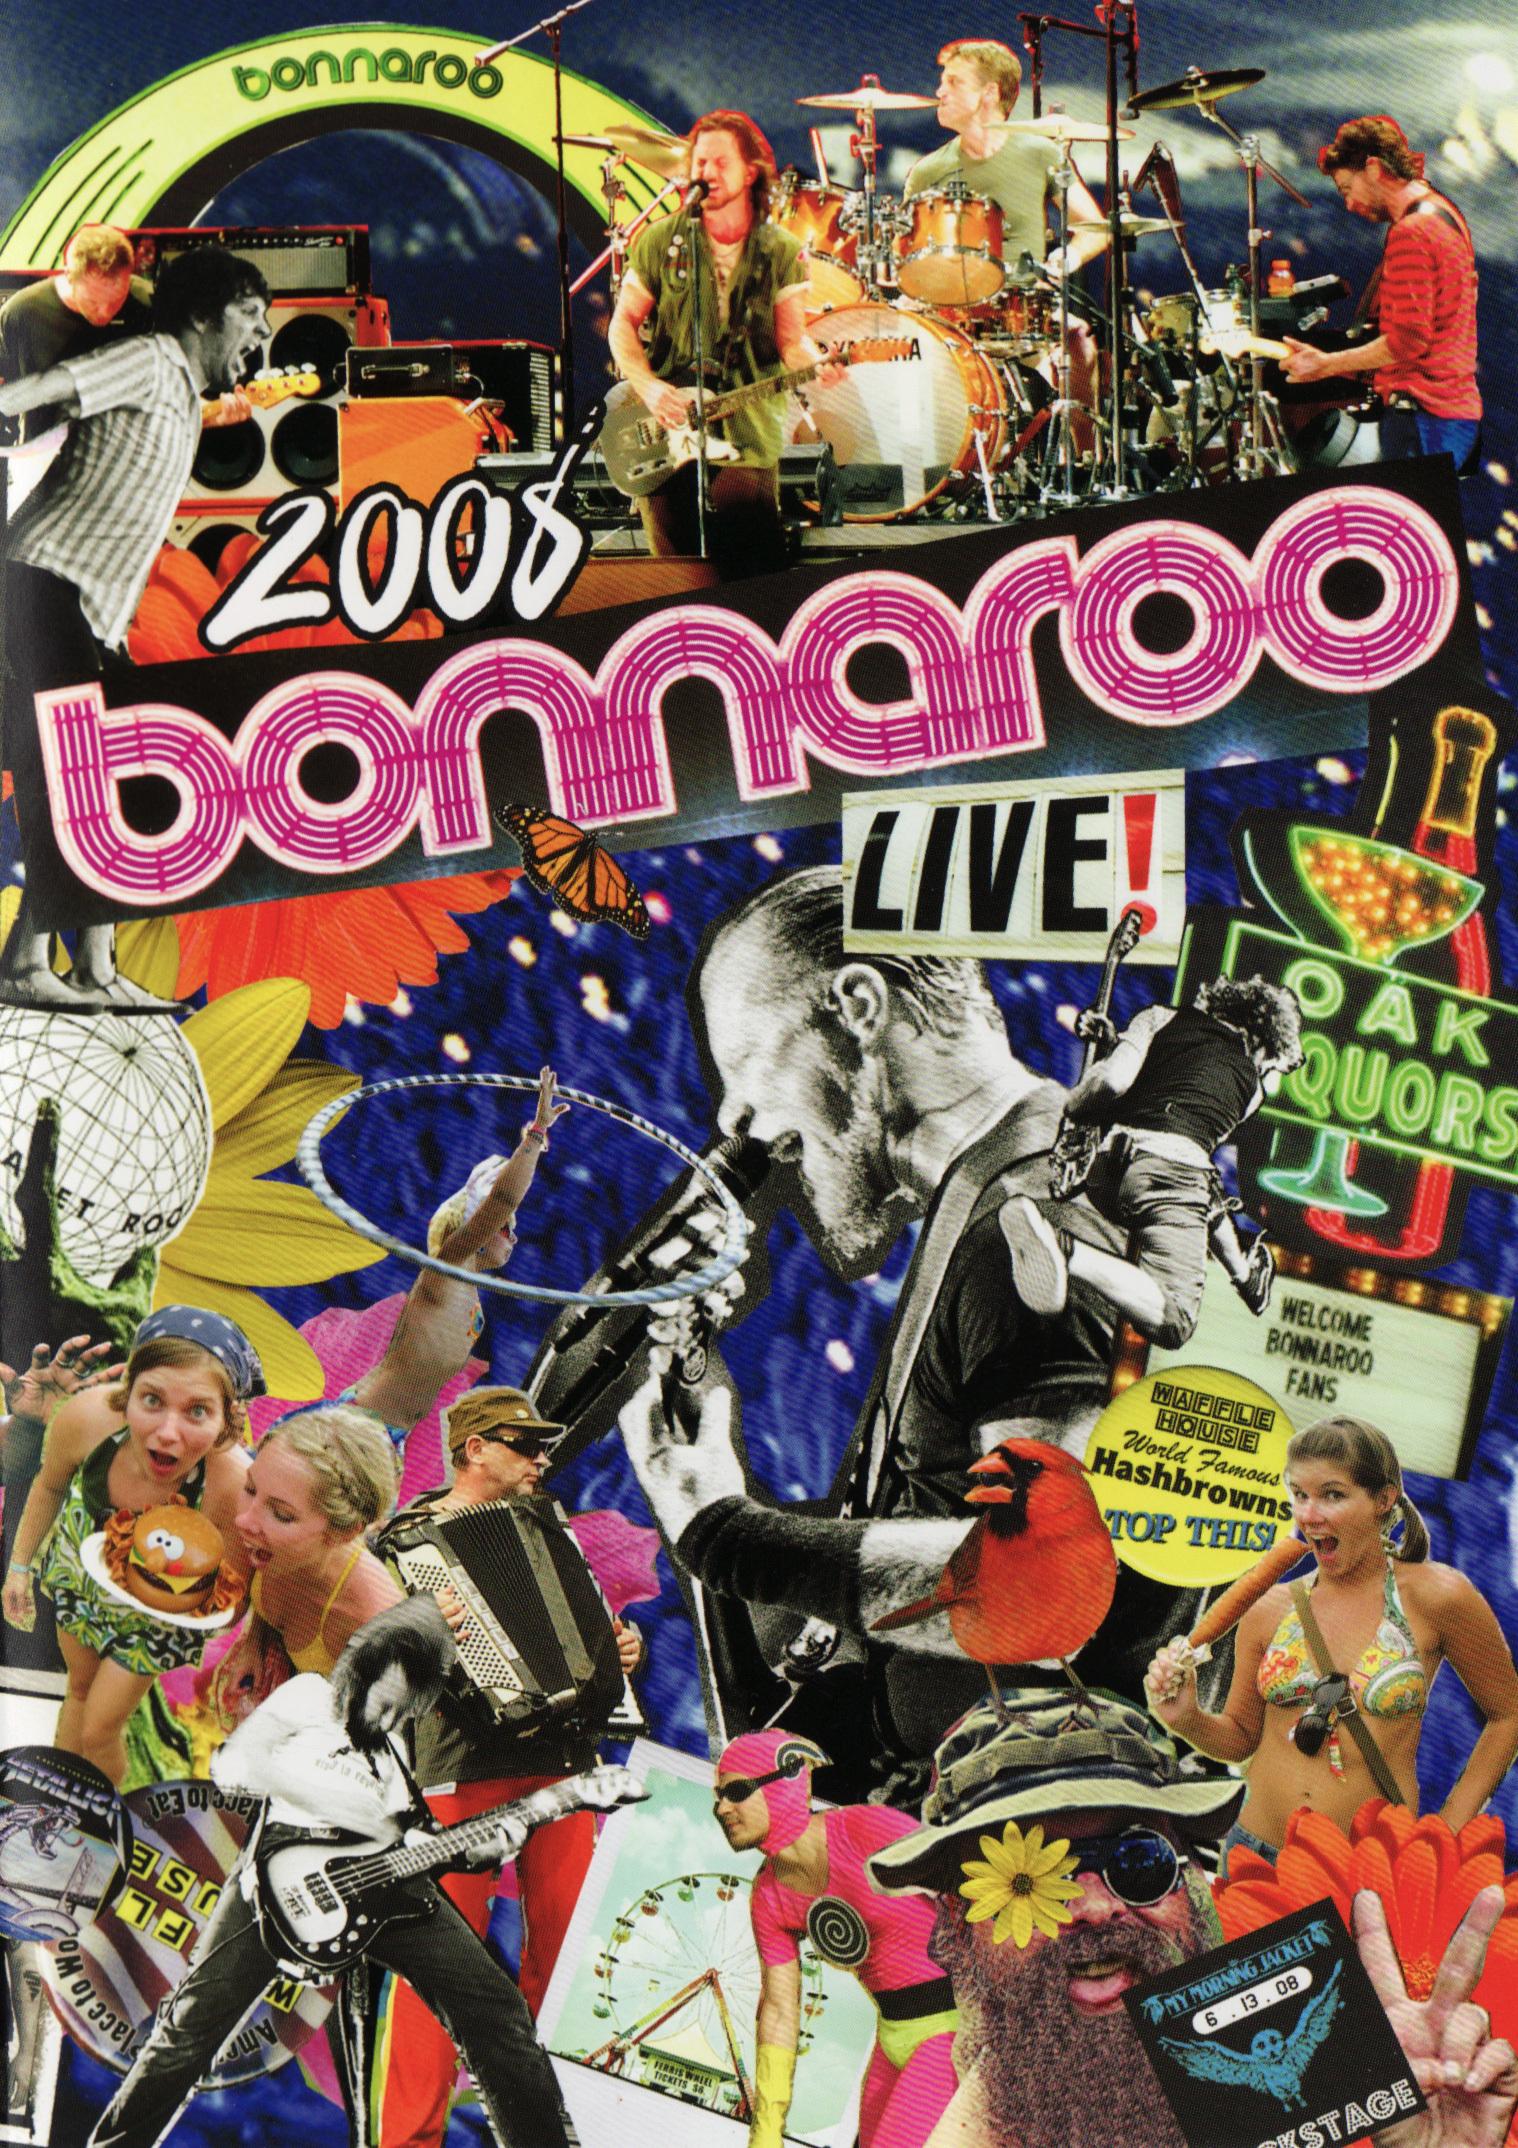 2008 Bonnaroo Live!